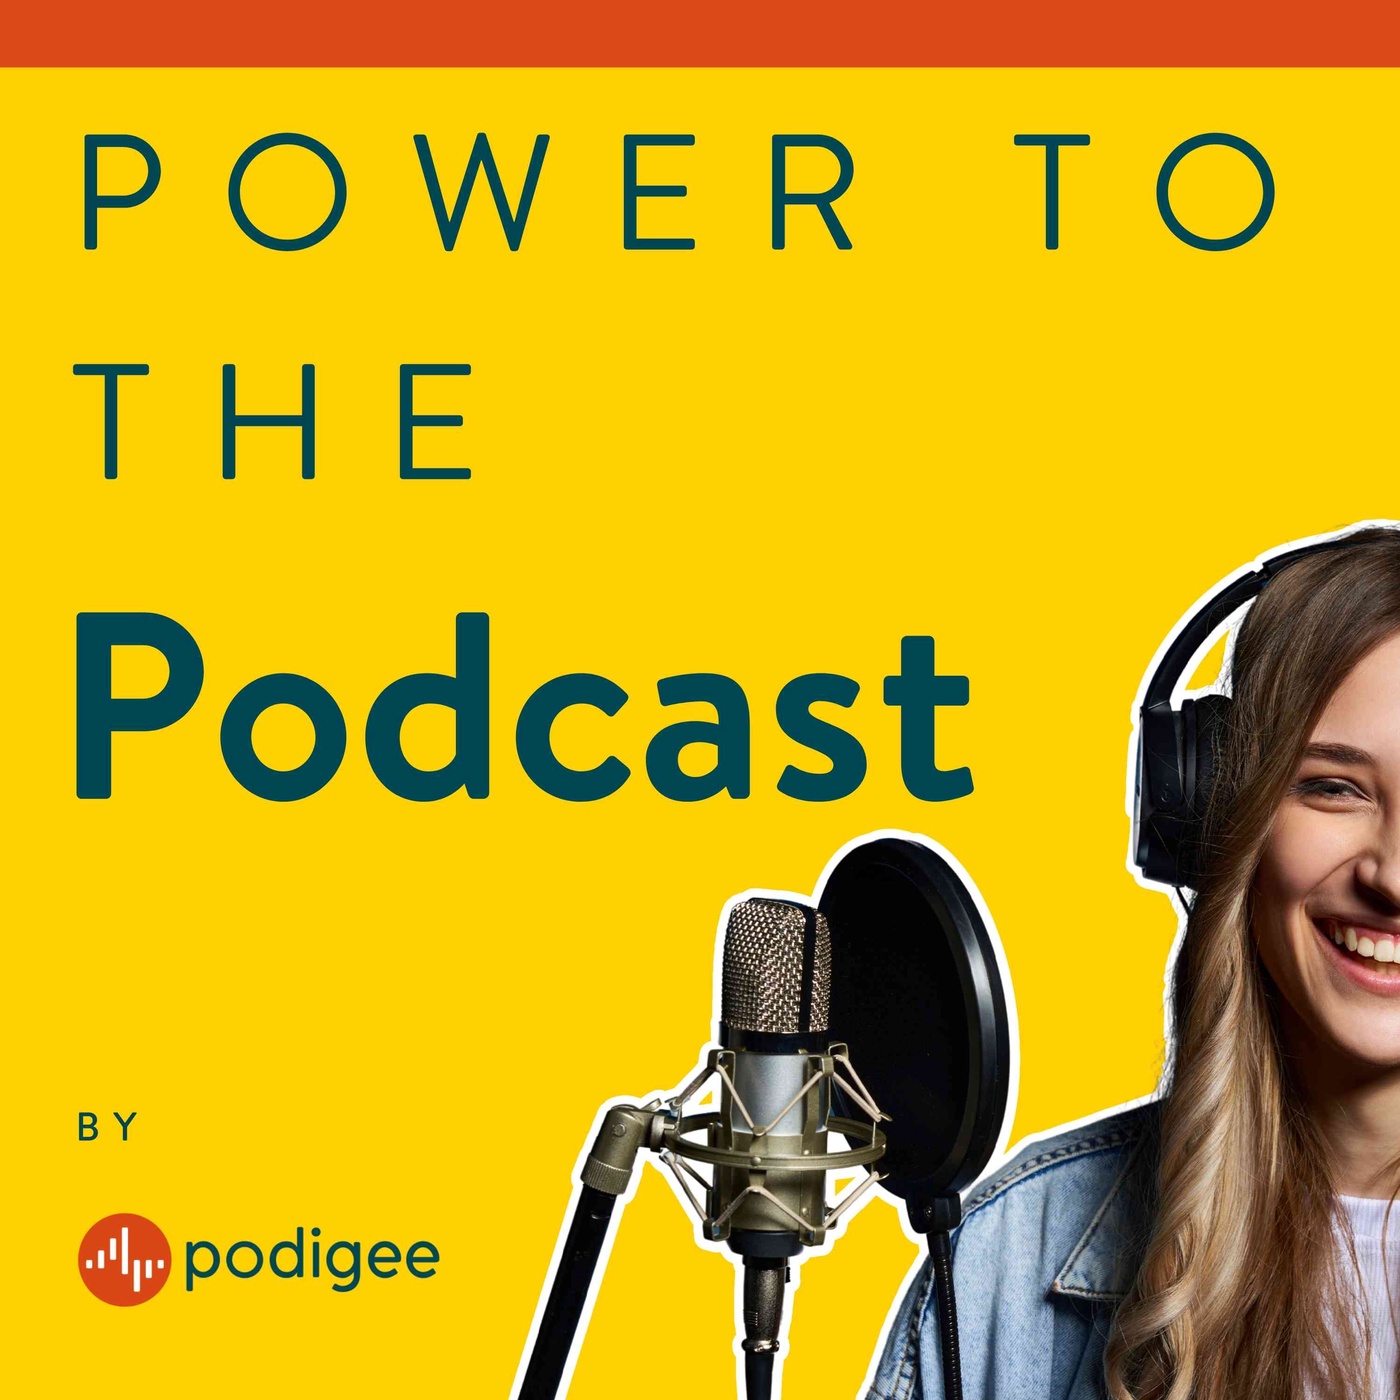 Power To The Podcast - Podcast starten, monetarisieren und zum Erfolg führen